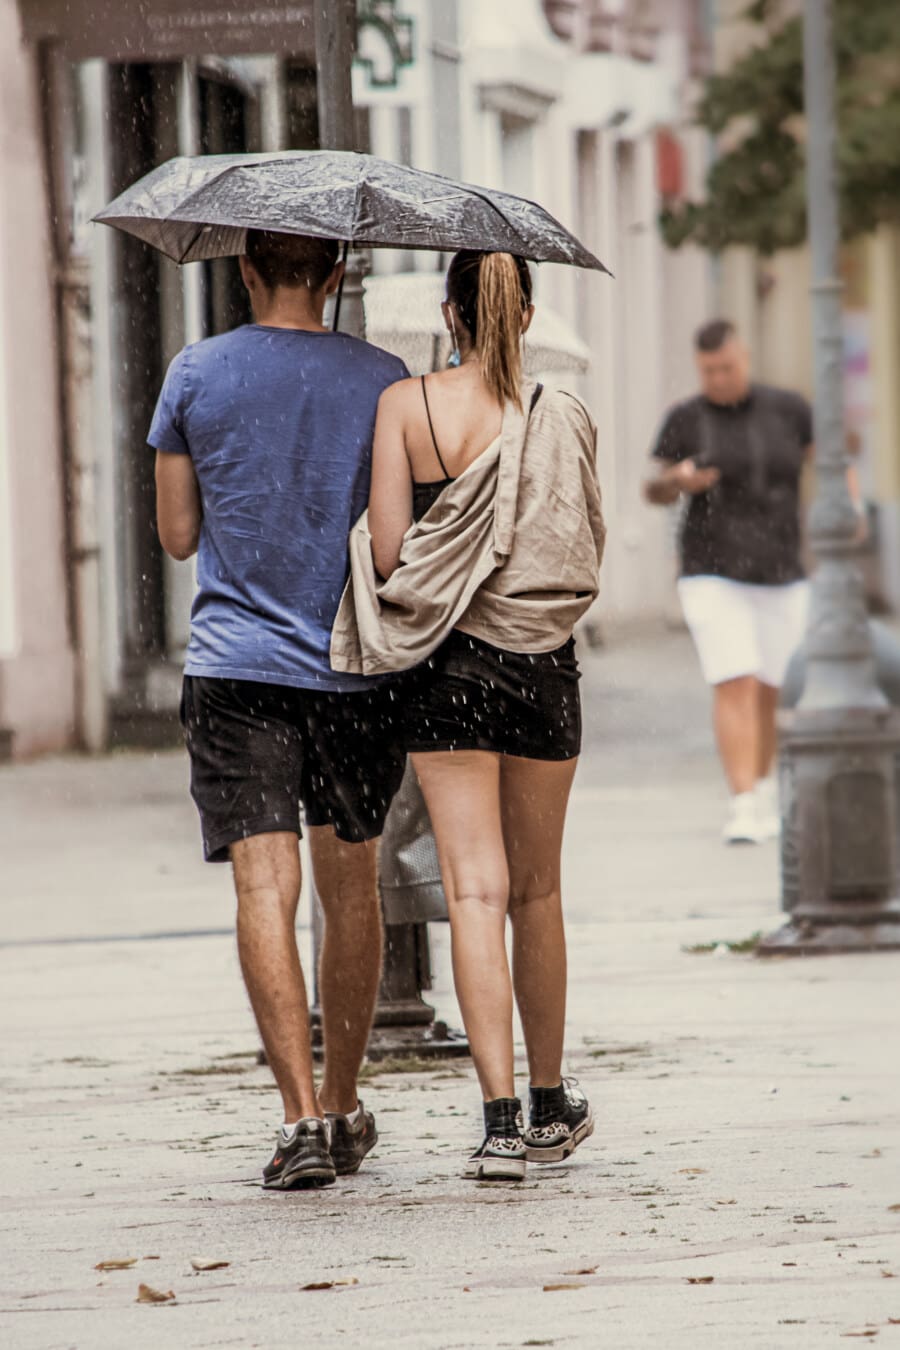 barátnő, eső, barátja, gyaloglás, esernyő, romantikus, utca, nő, lány, szoknya